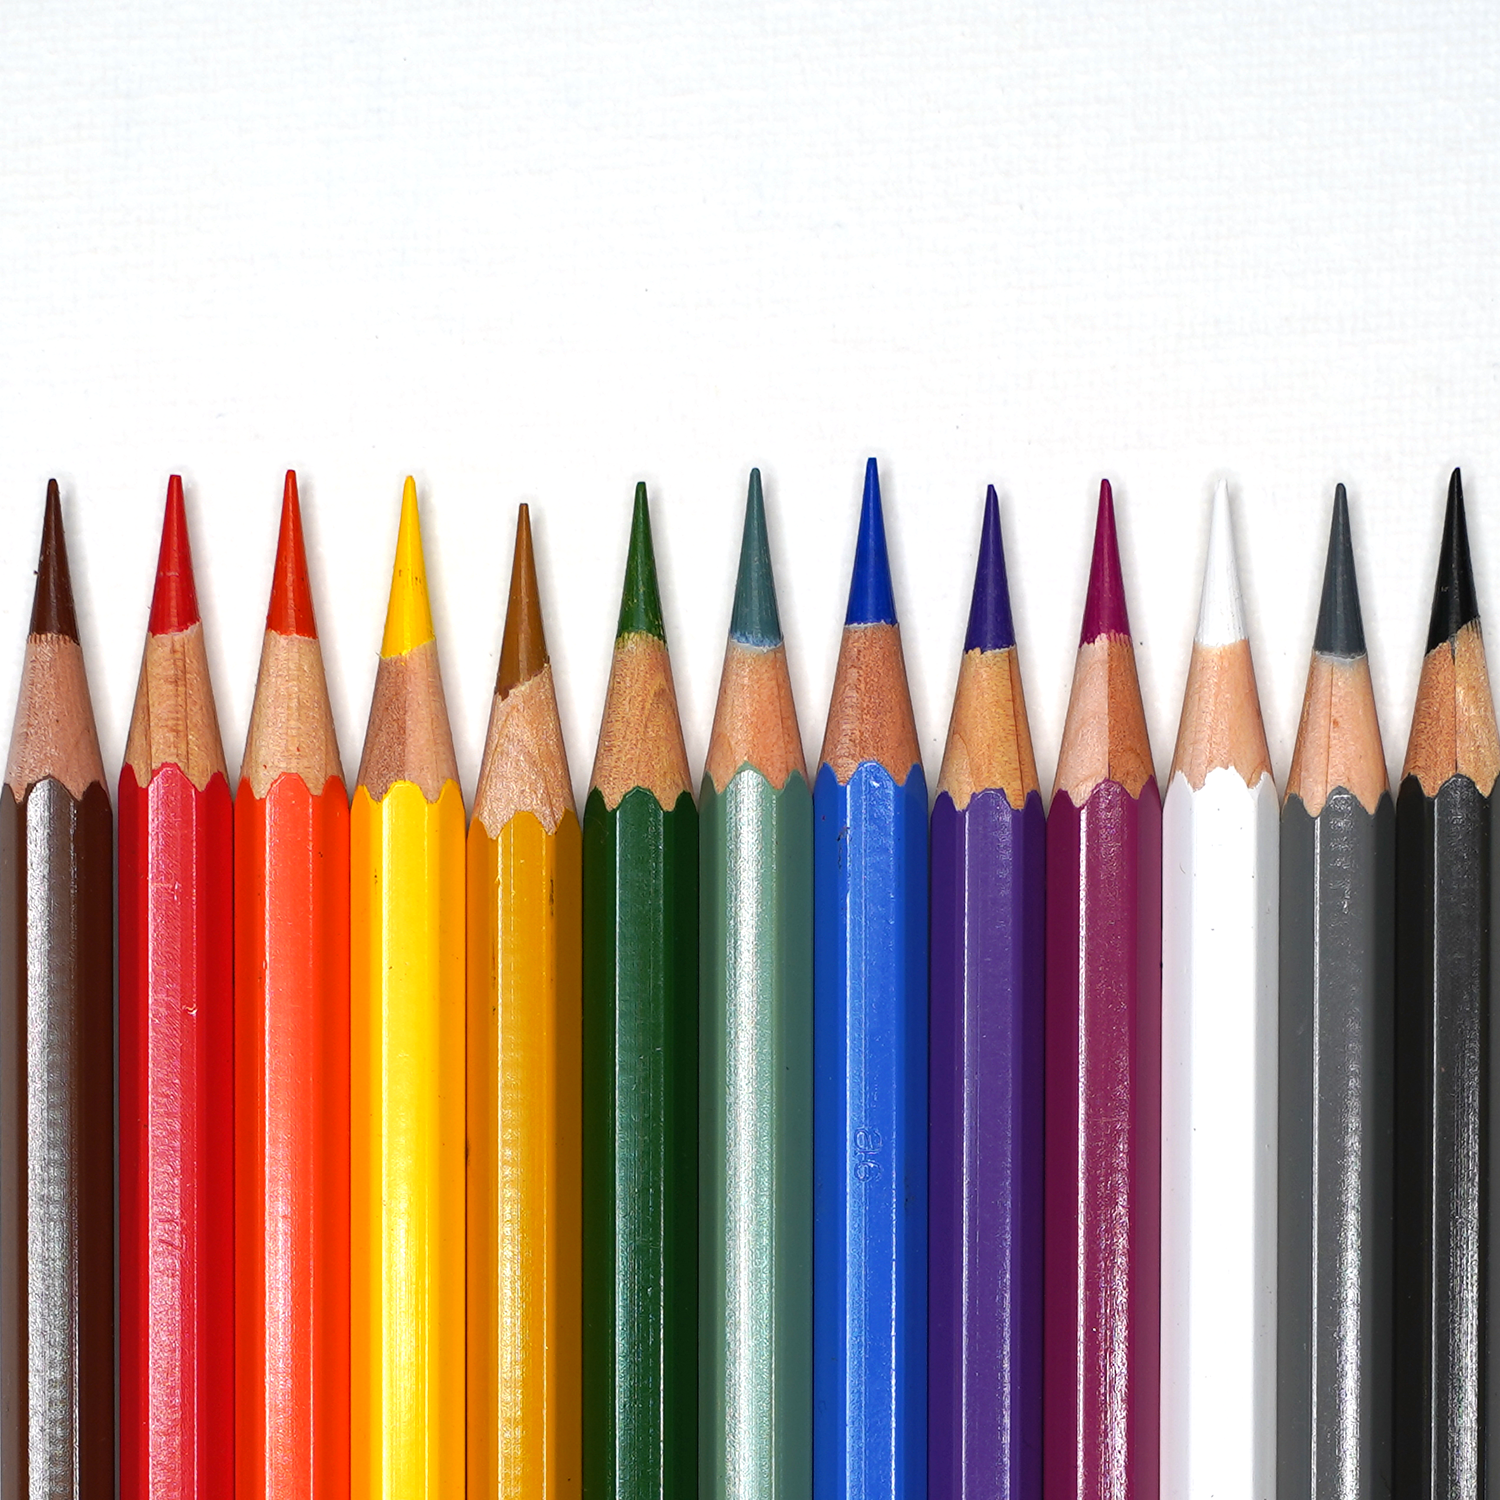 13 Essential Watercolor Pencils